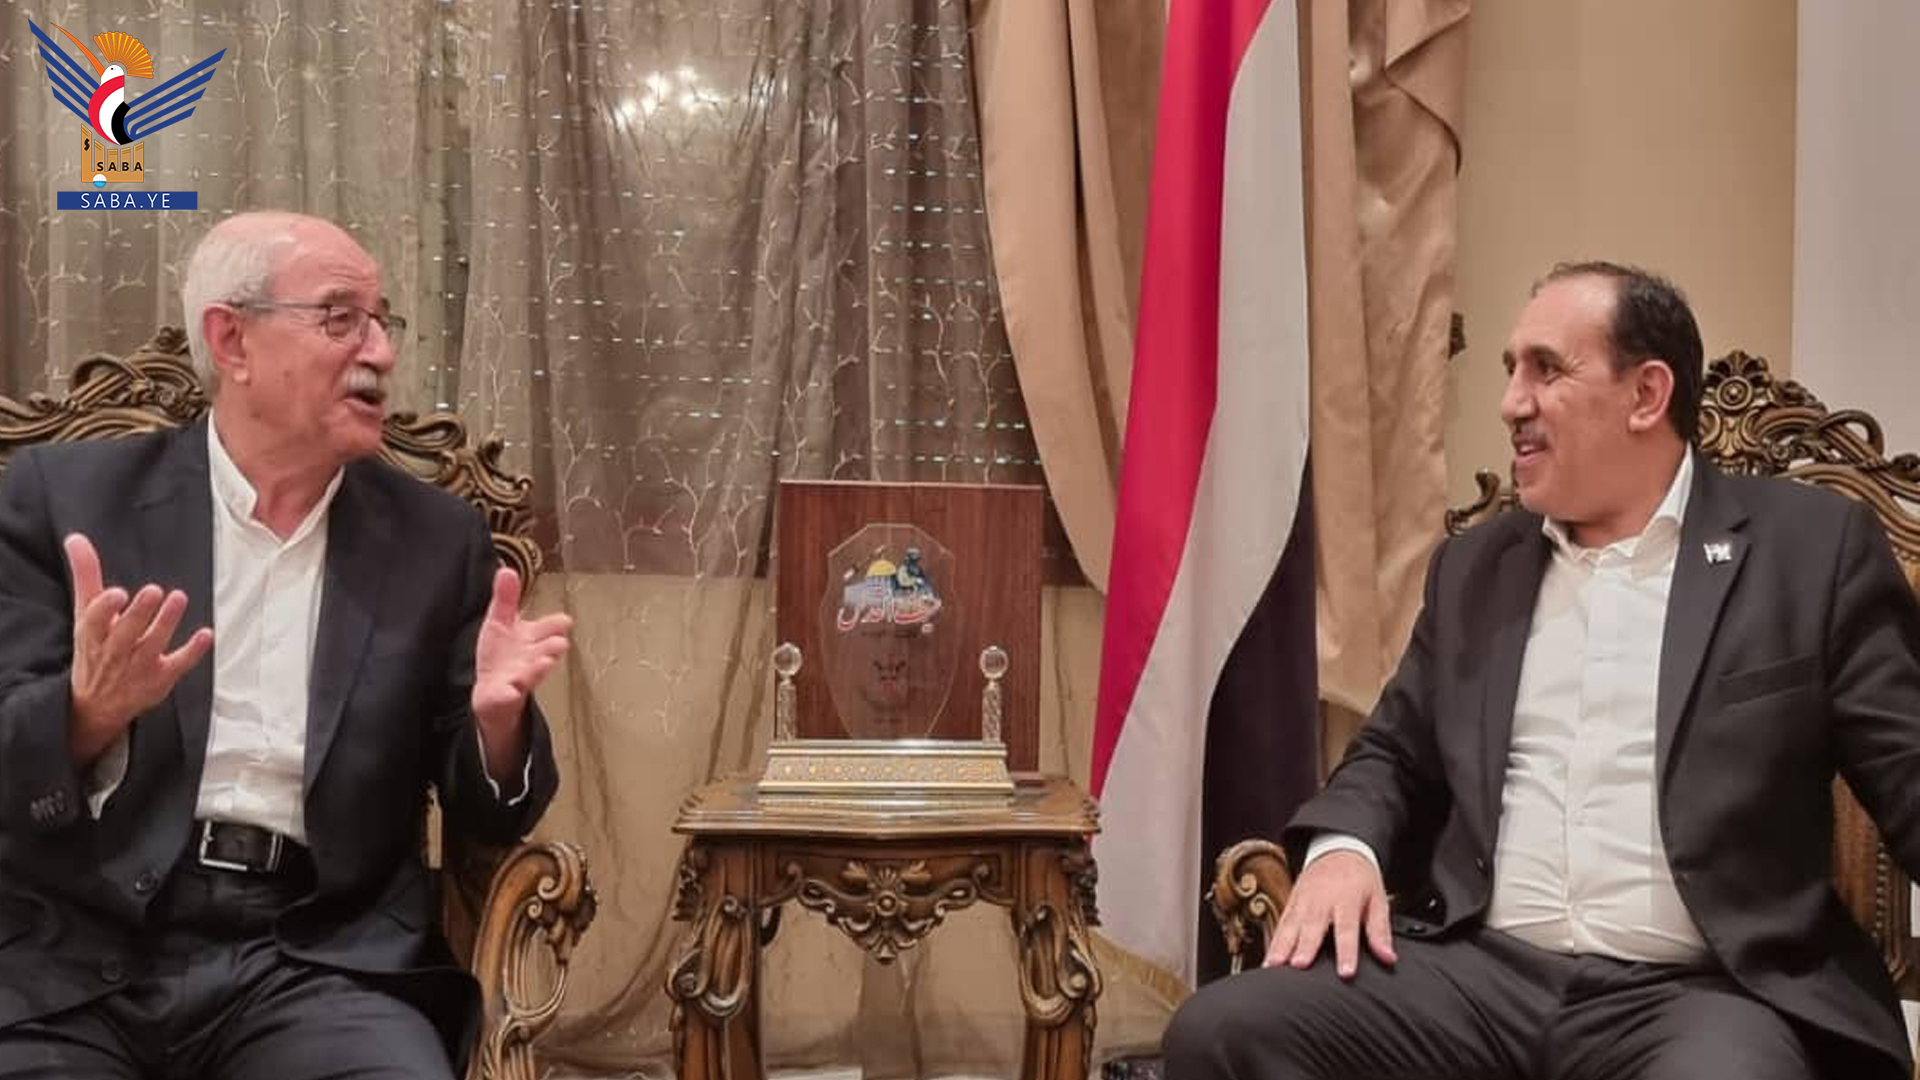 Jemen-Botschafter trifft in Damaskus mit dem Generalsekretär der Weltversammlung zur Unterstützung der Widerstandsoption zusammen